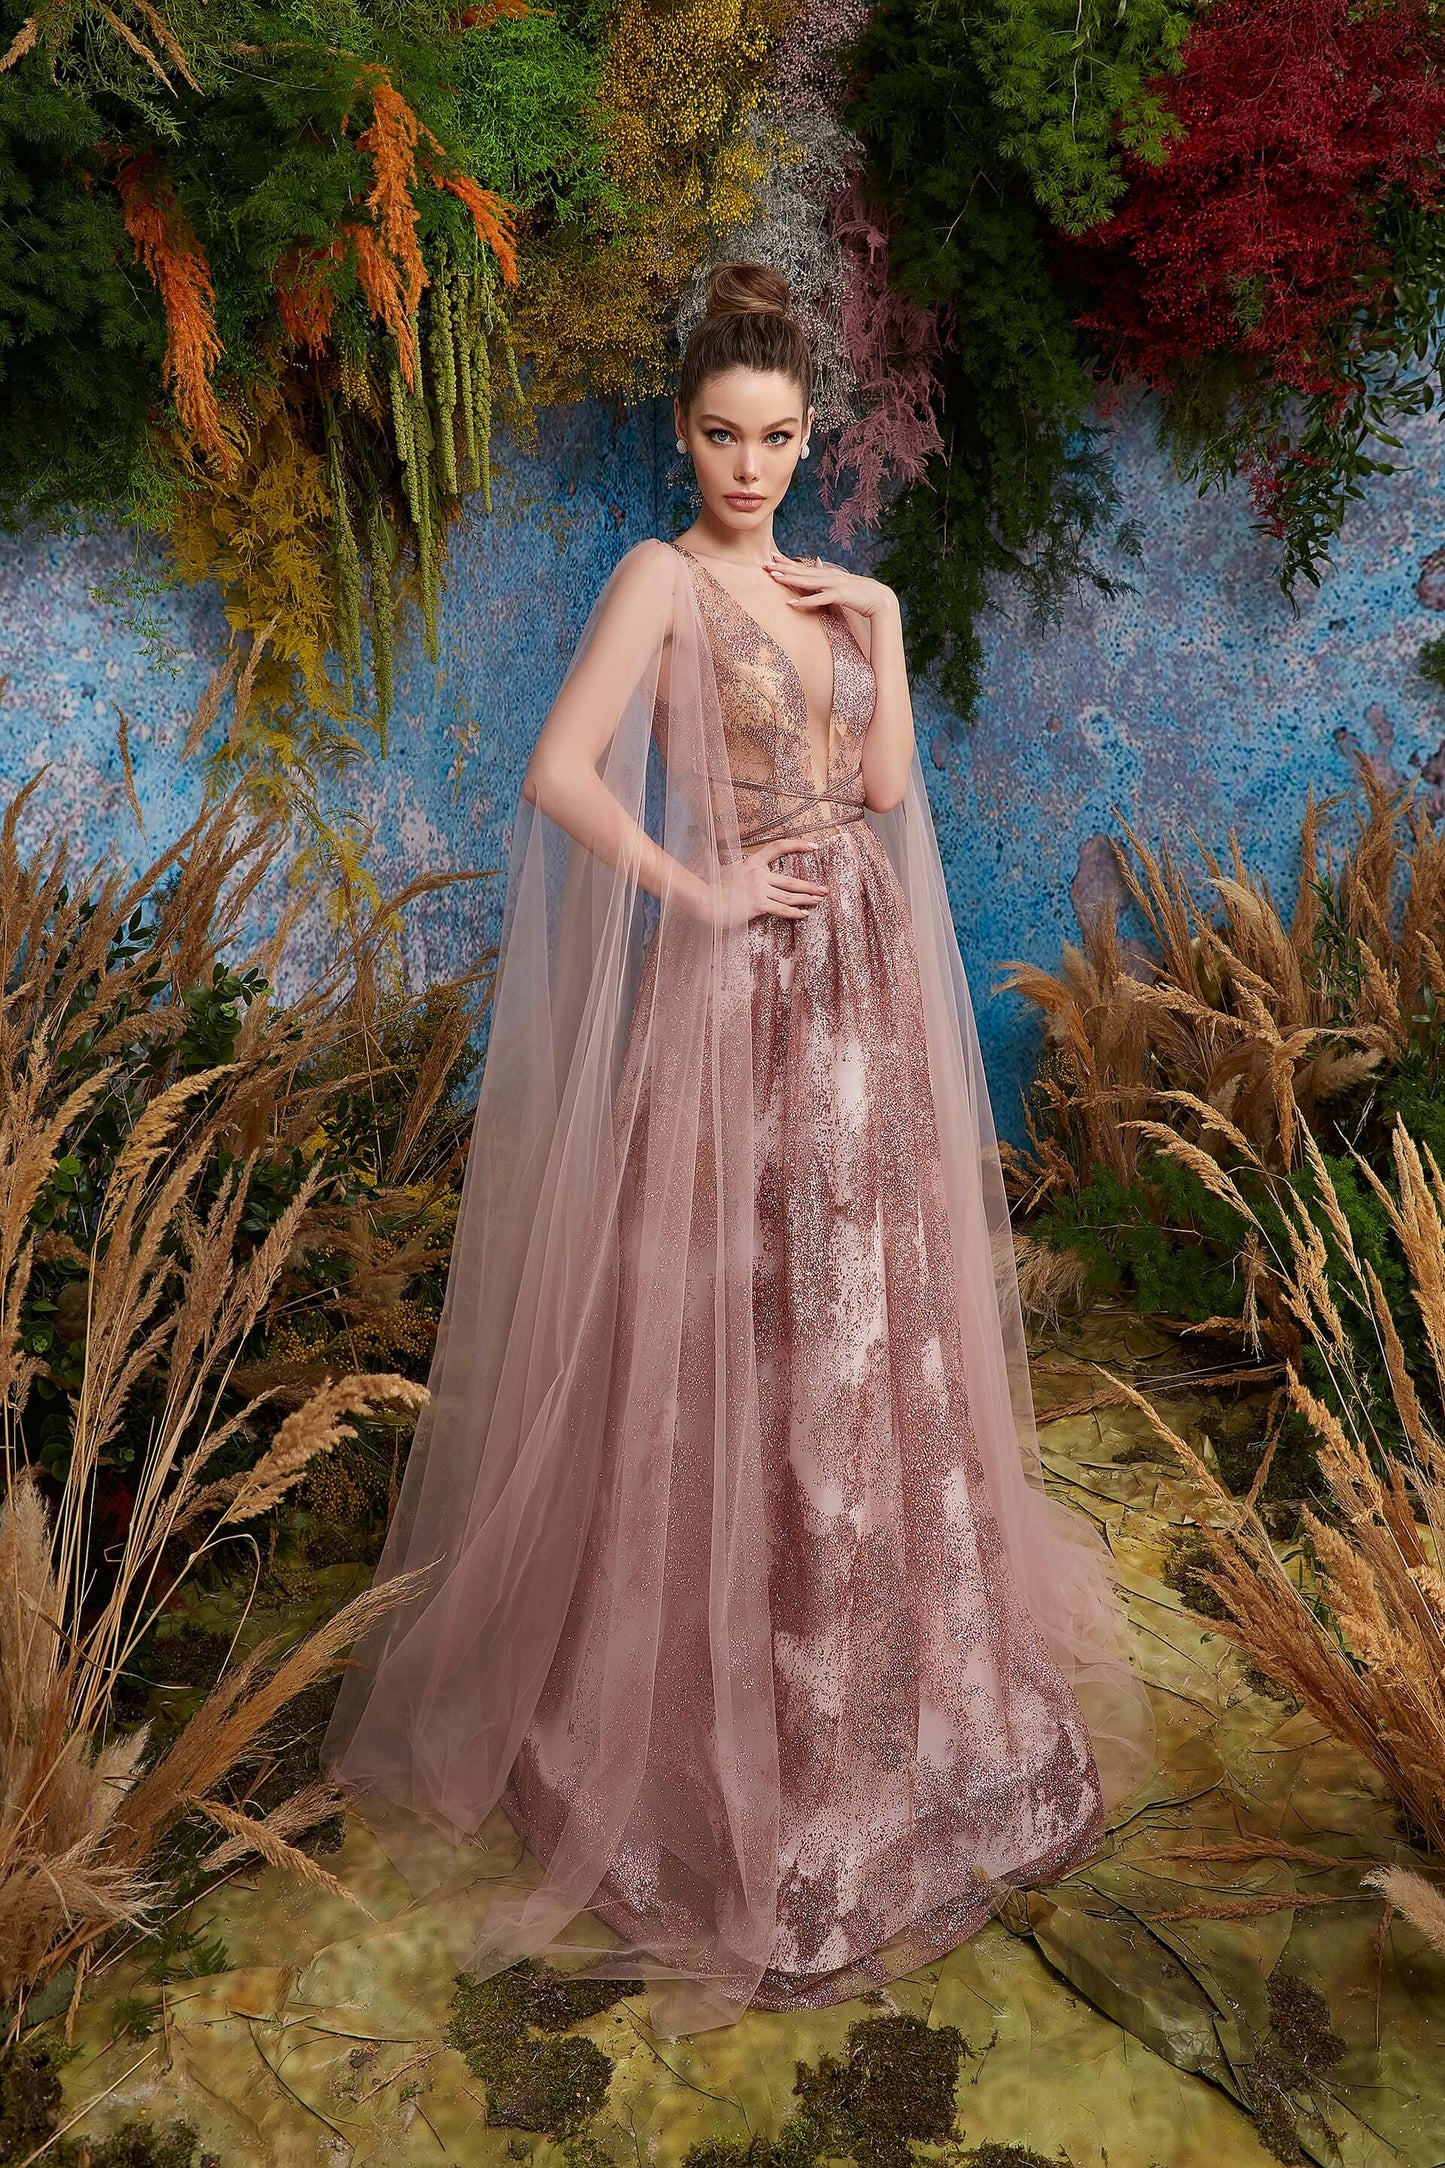 Olyamak Penelopa Pink Dress on Model - Rofial Beauty